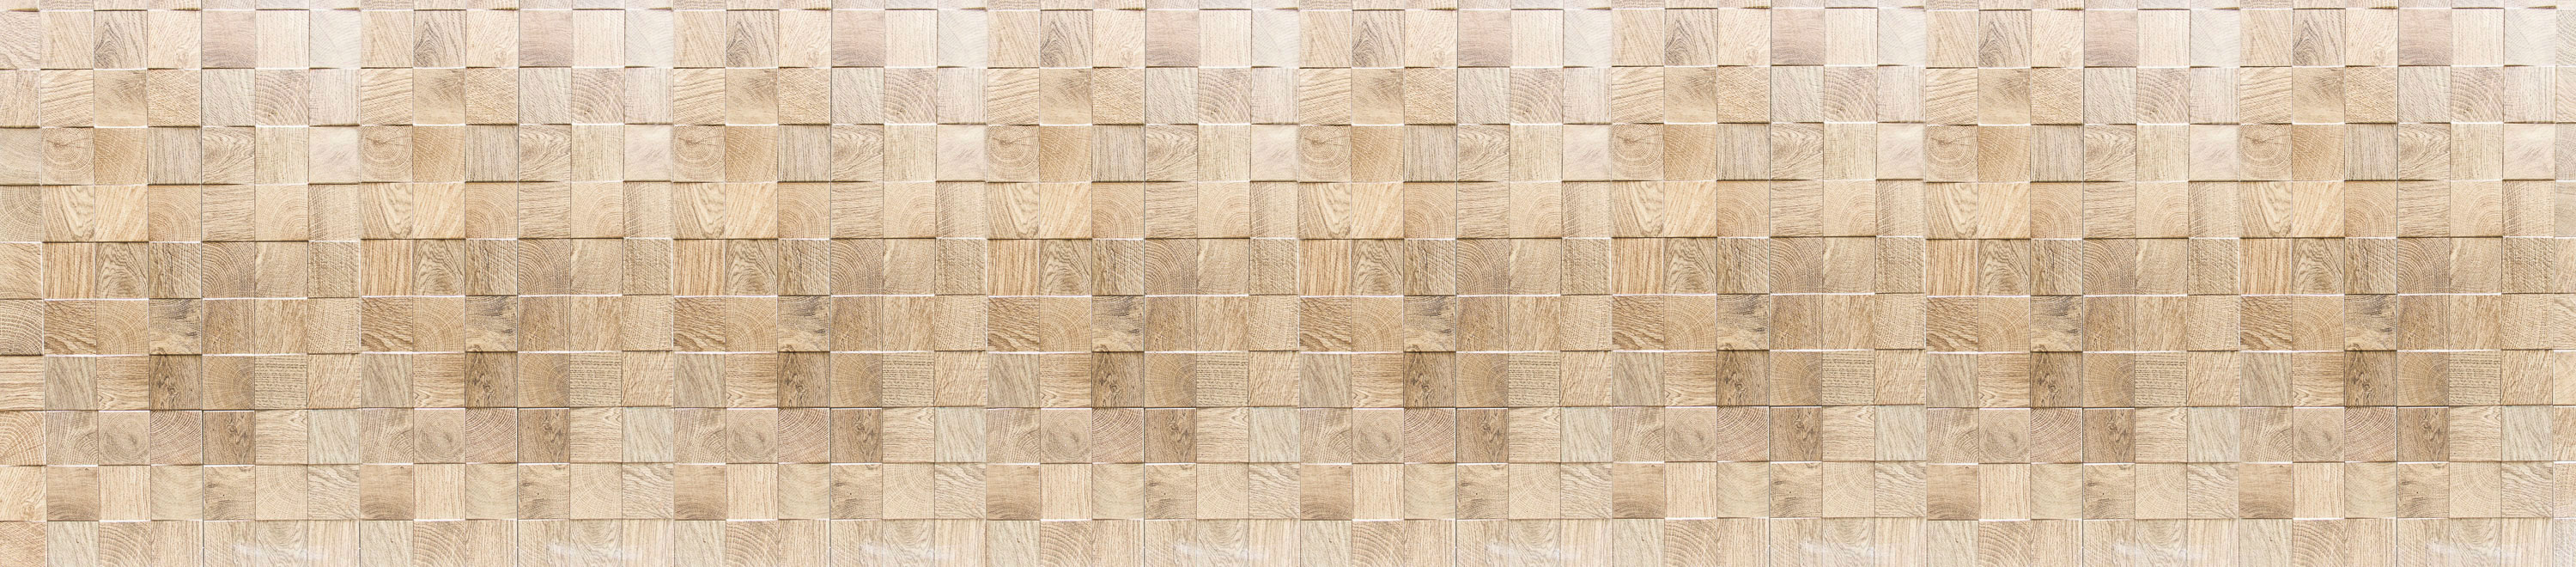 Стеновая декоративная панель 2800x610x4мм AL11 деревянная плитка / 76003 / оптом и в розницу / мебельная фурнитура "ЛАВР"